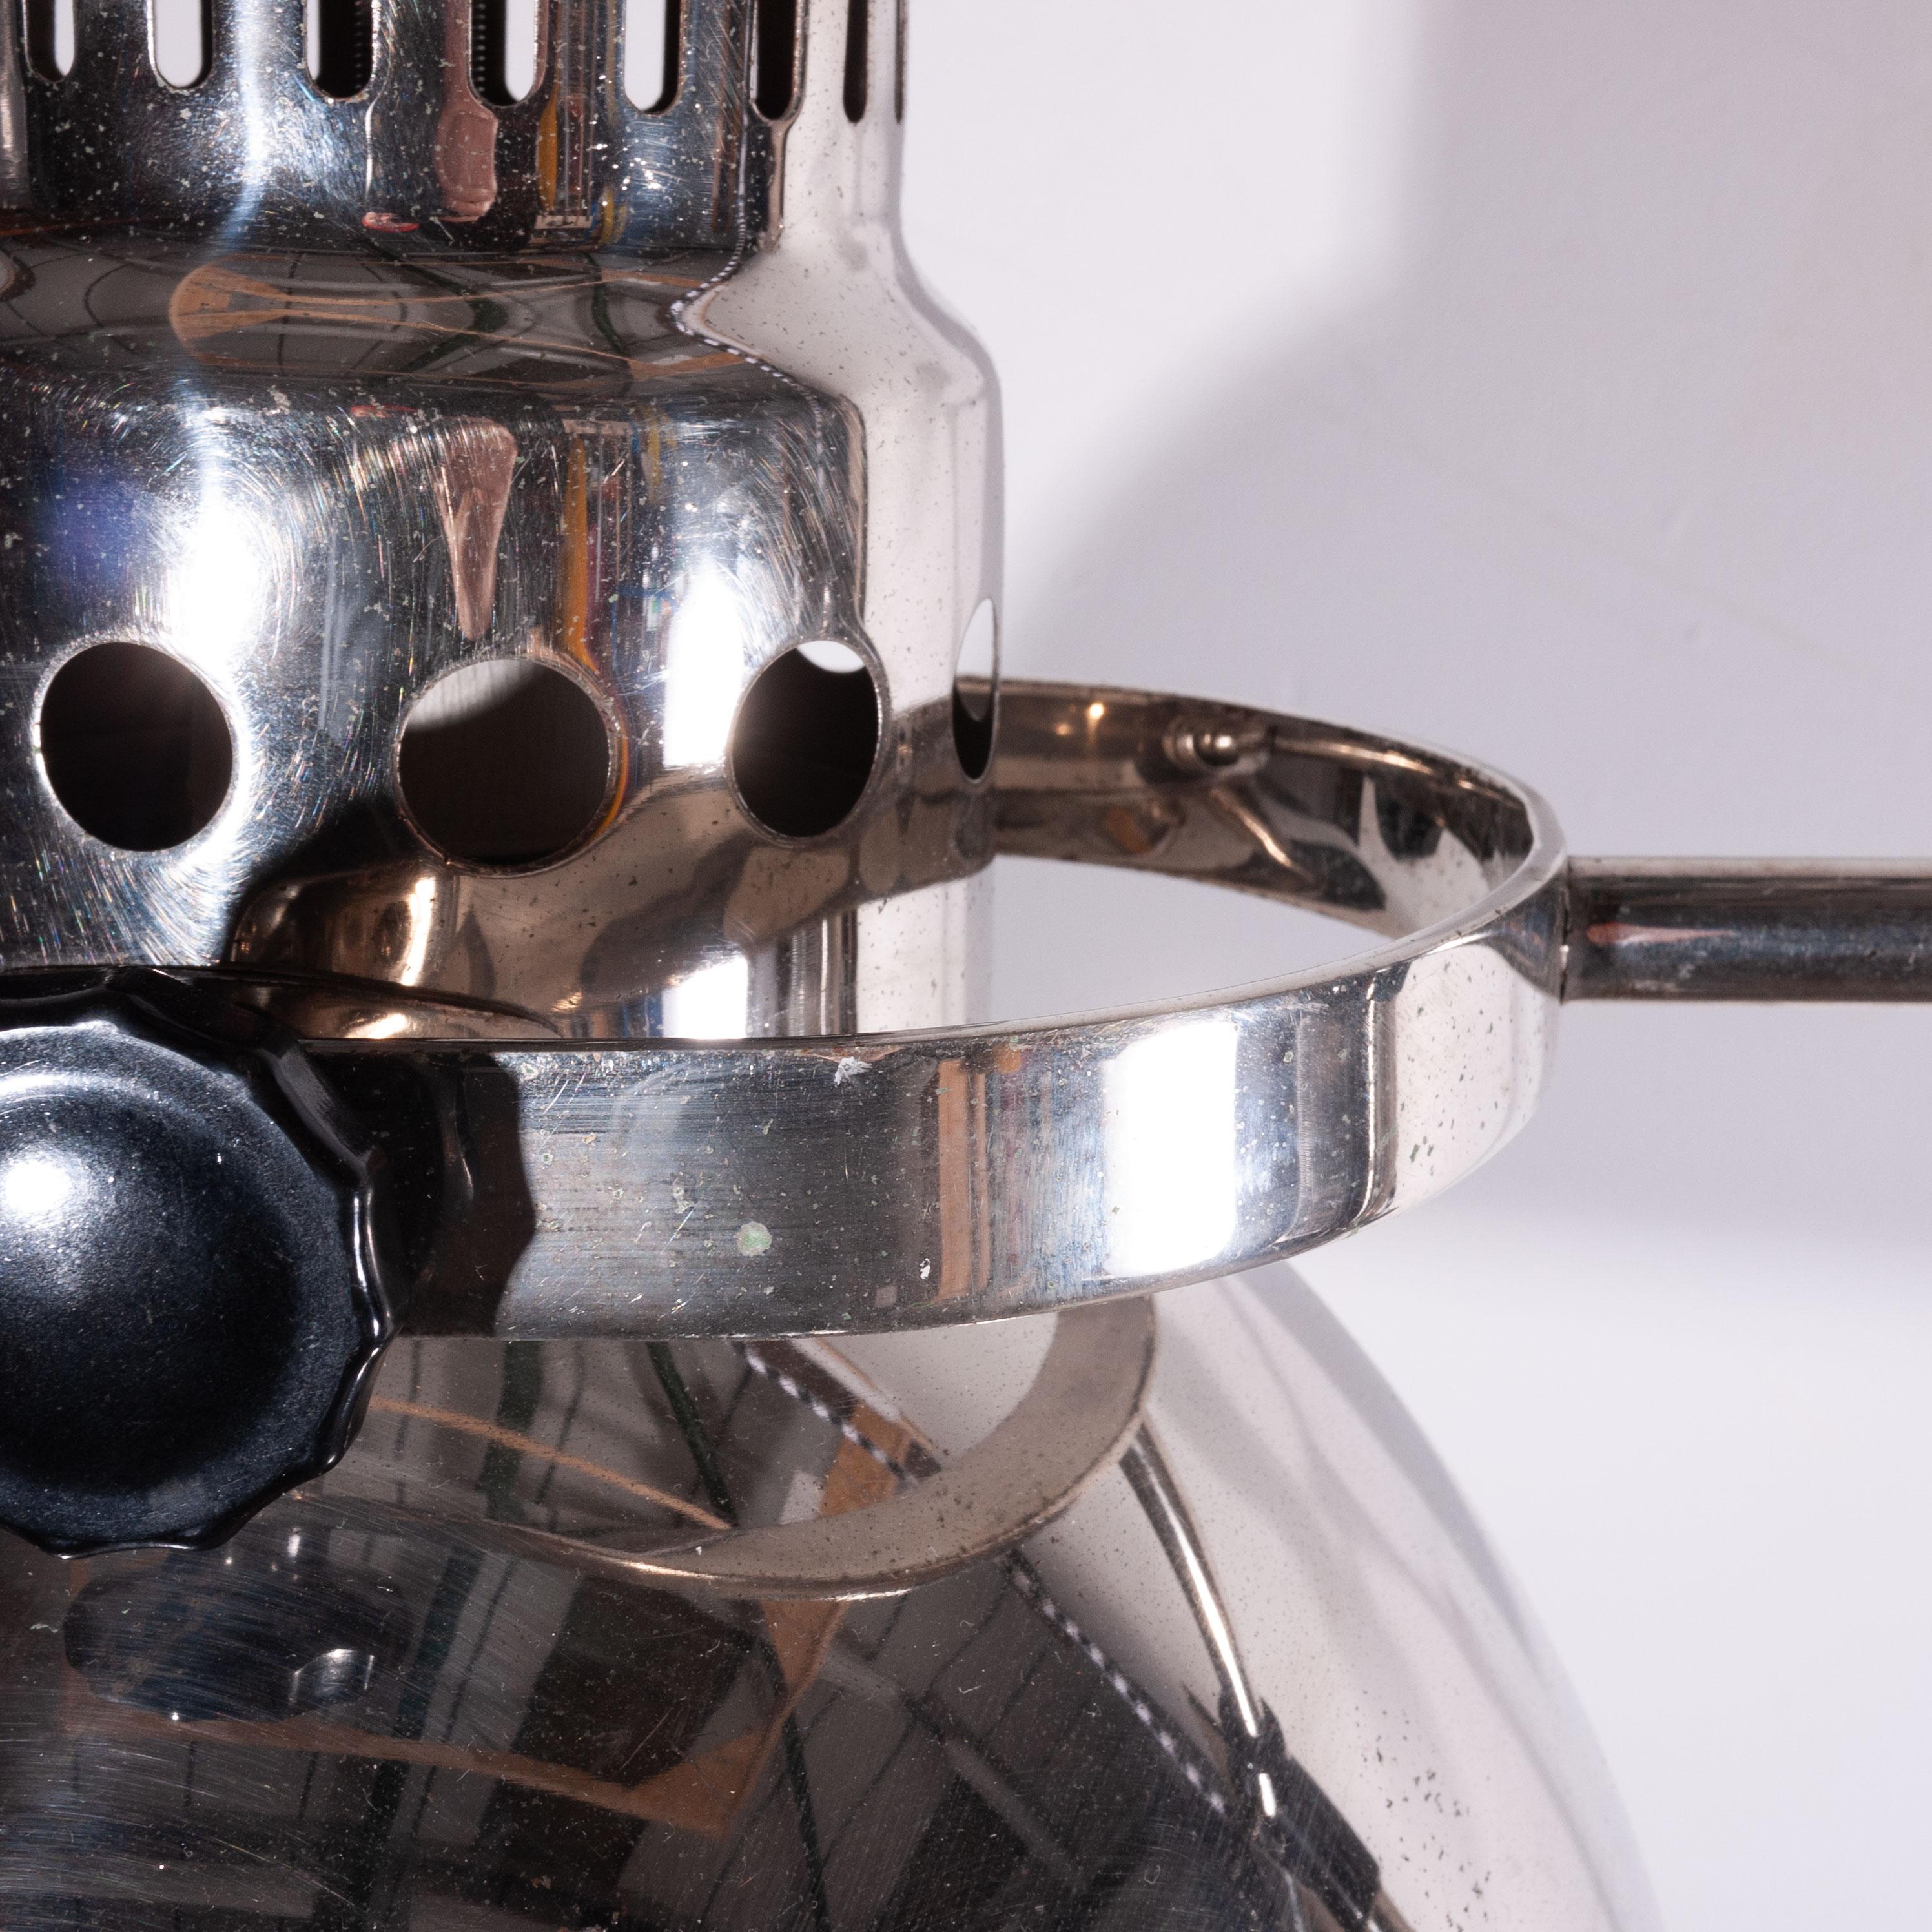 lampadaire industriel chromé réglable des années 1950, base pivotante sur roulettes
lampe sur pied/lampe industrielle chromée des années 1950, réglable, avec base pivotante sur roulettes. Provenant d'un laboratoire ex-soviétique, c'est un